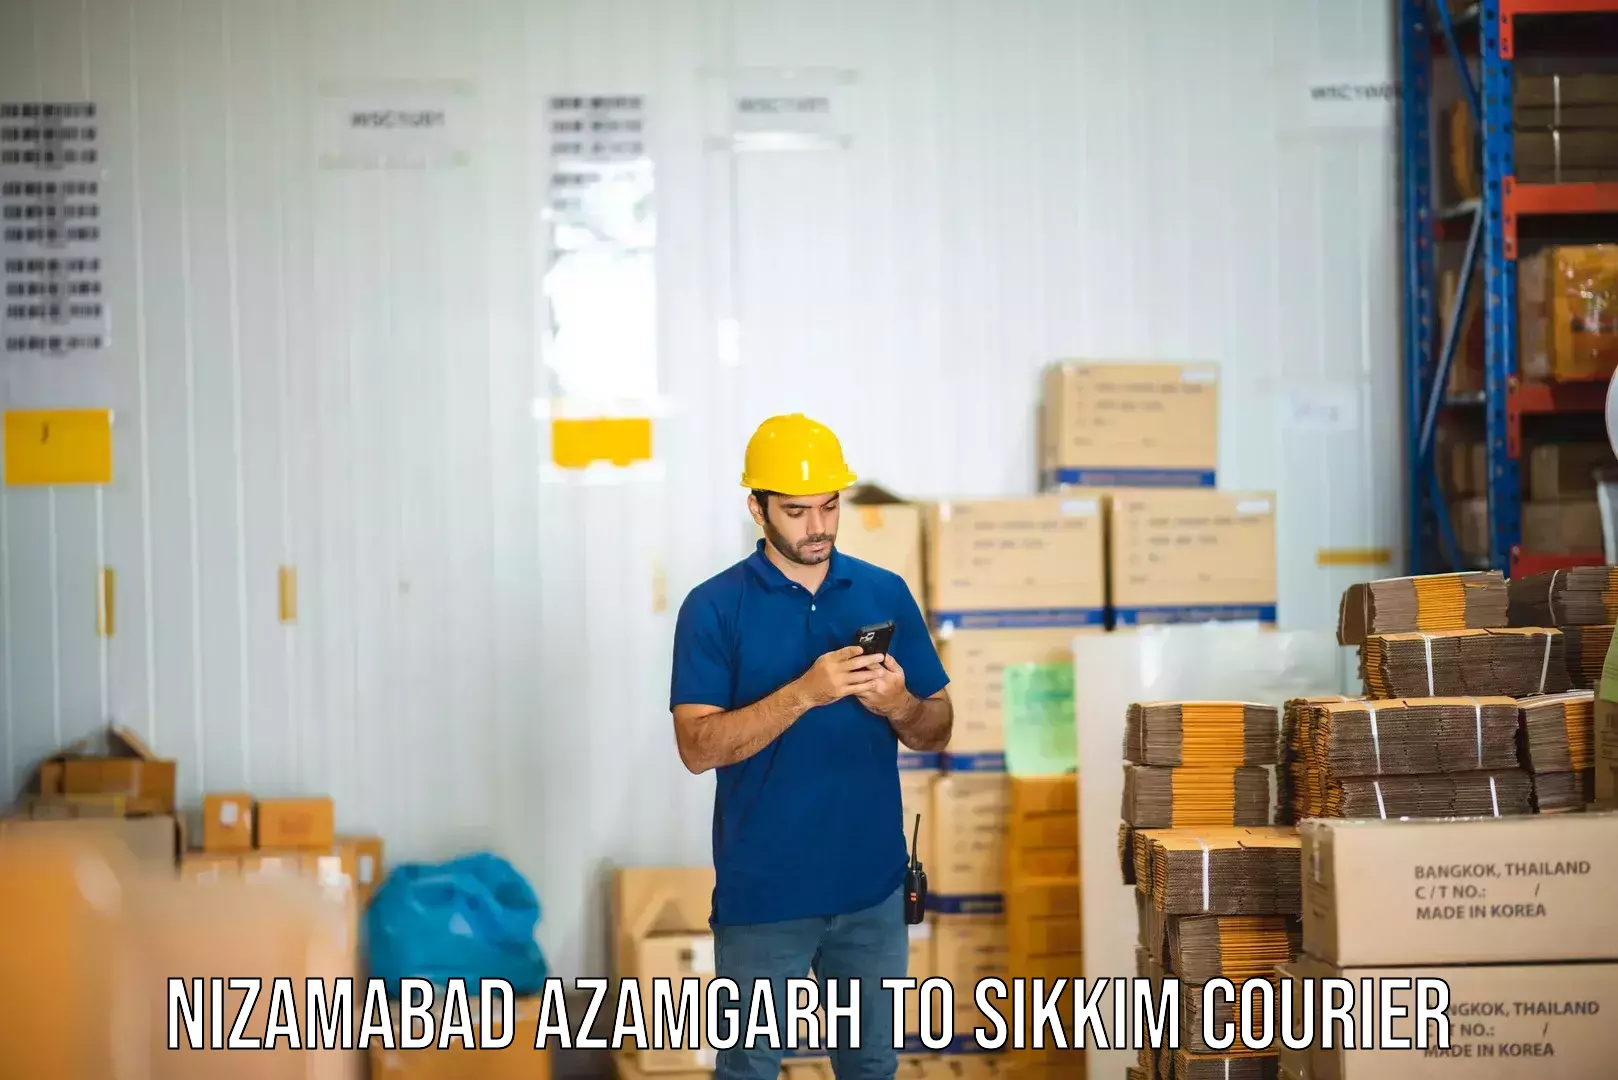 Global freight services Nizamabad Azamgarh to Singtam